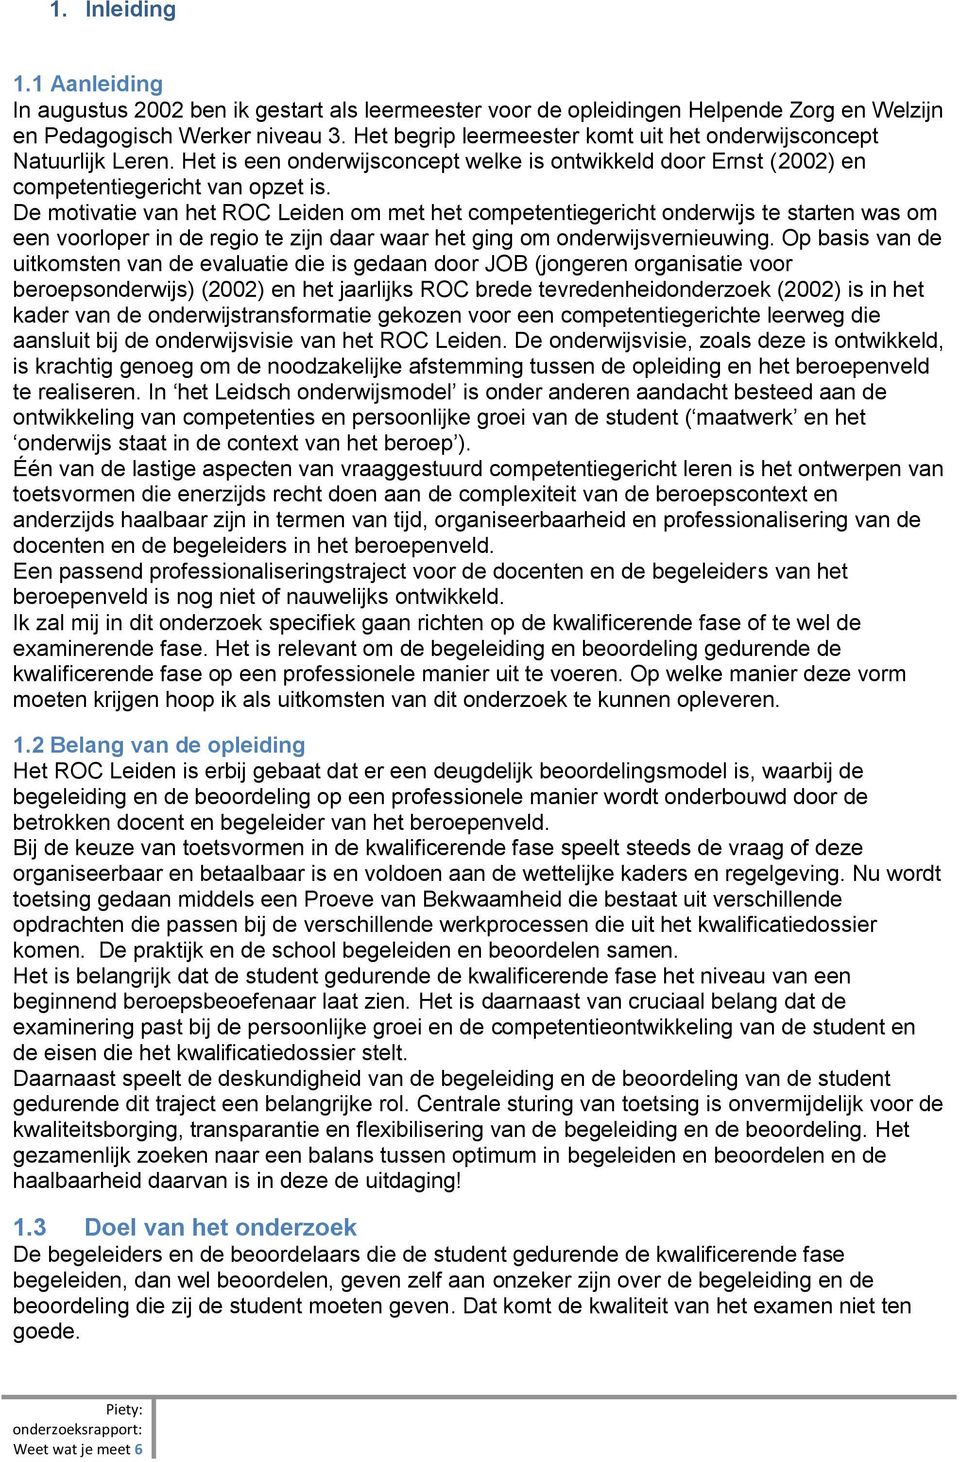 De motivatie van het ROC Leiden om met het competentiegericht onderwijs te starten was om een voorloper in de regio te zijn daar waar het ging om onderwijsvernieuwing.